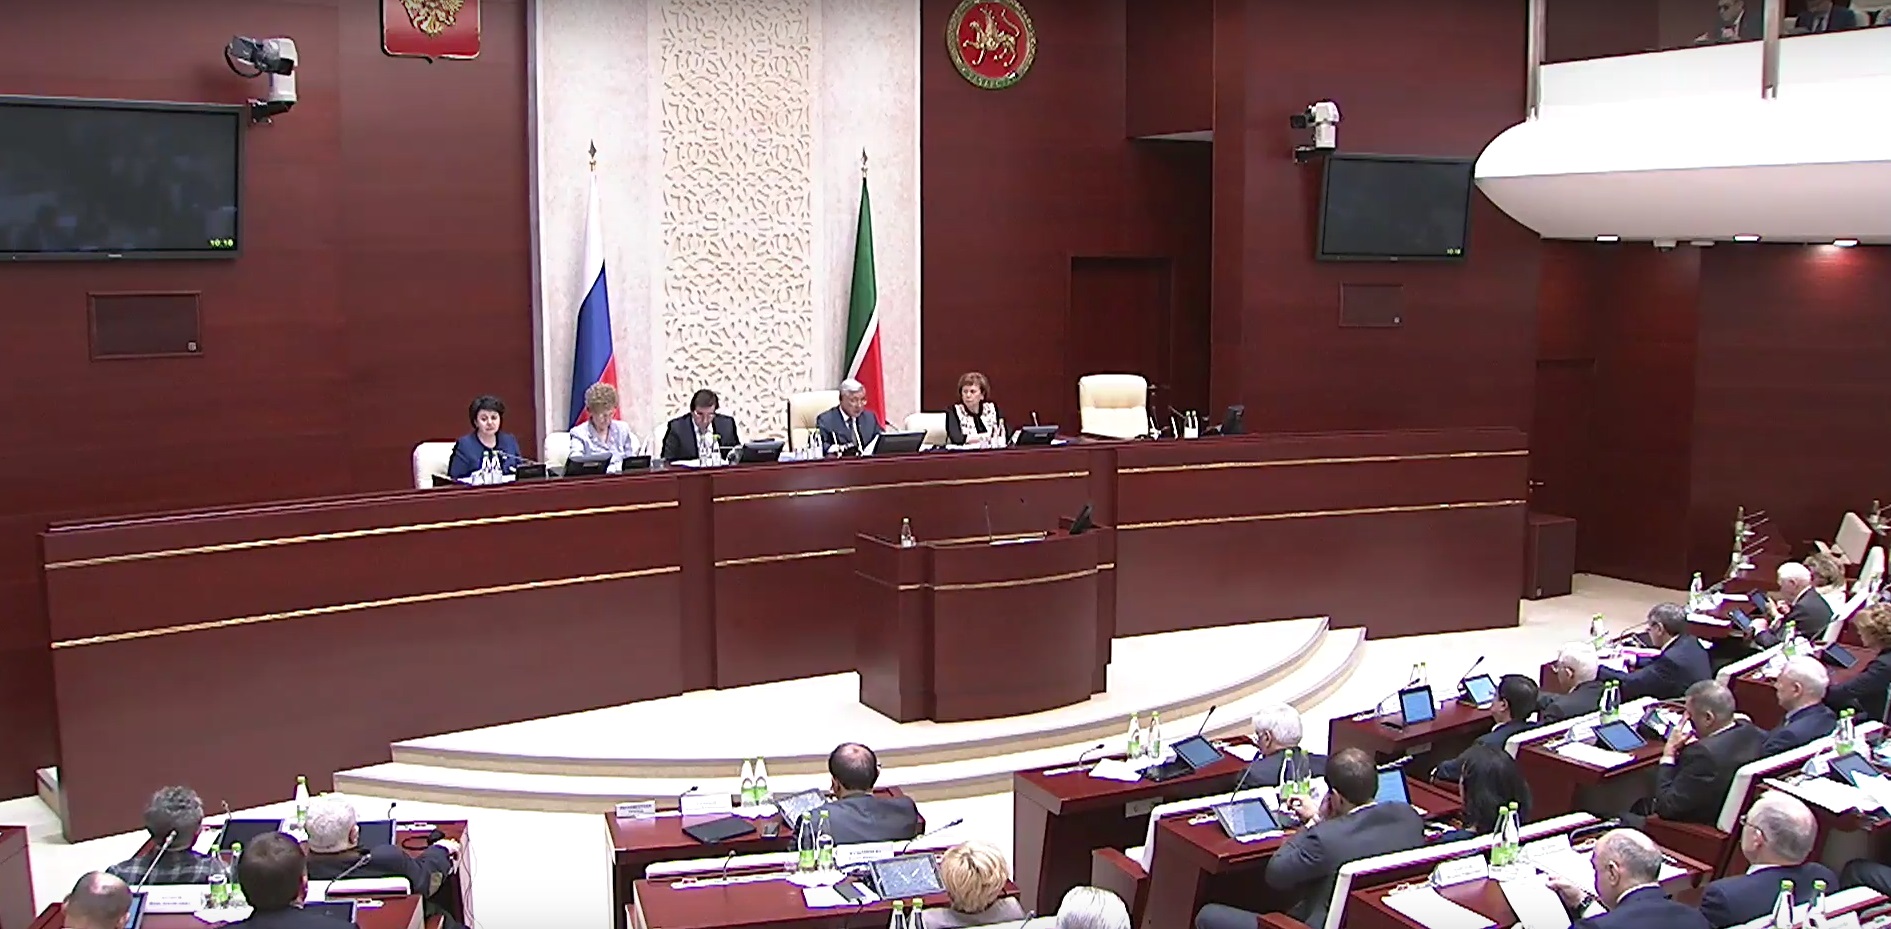 Депутаты Госсовета Татарстана не оправдали надежды противников МСЗ